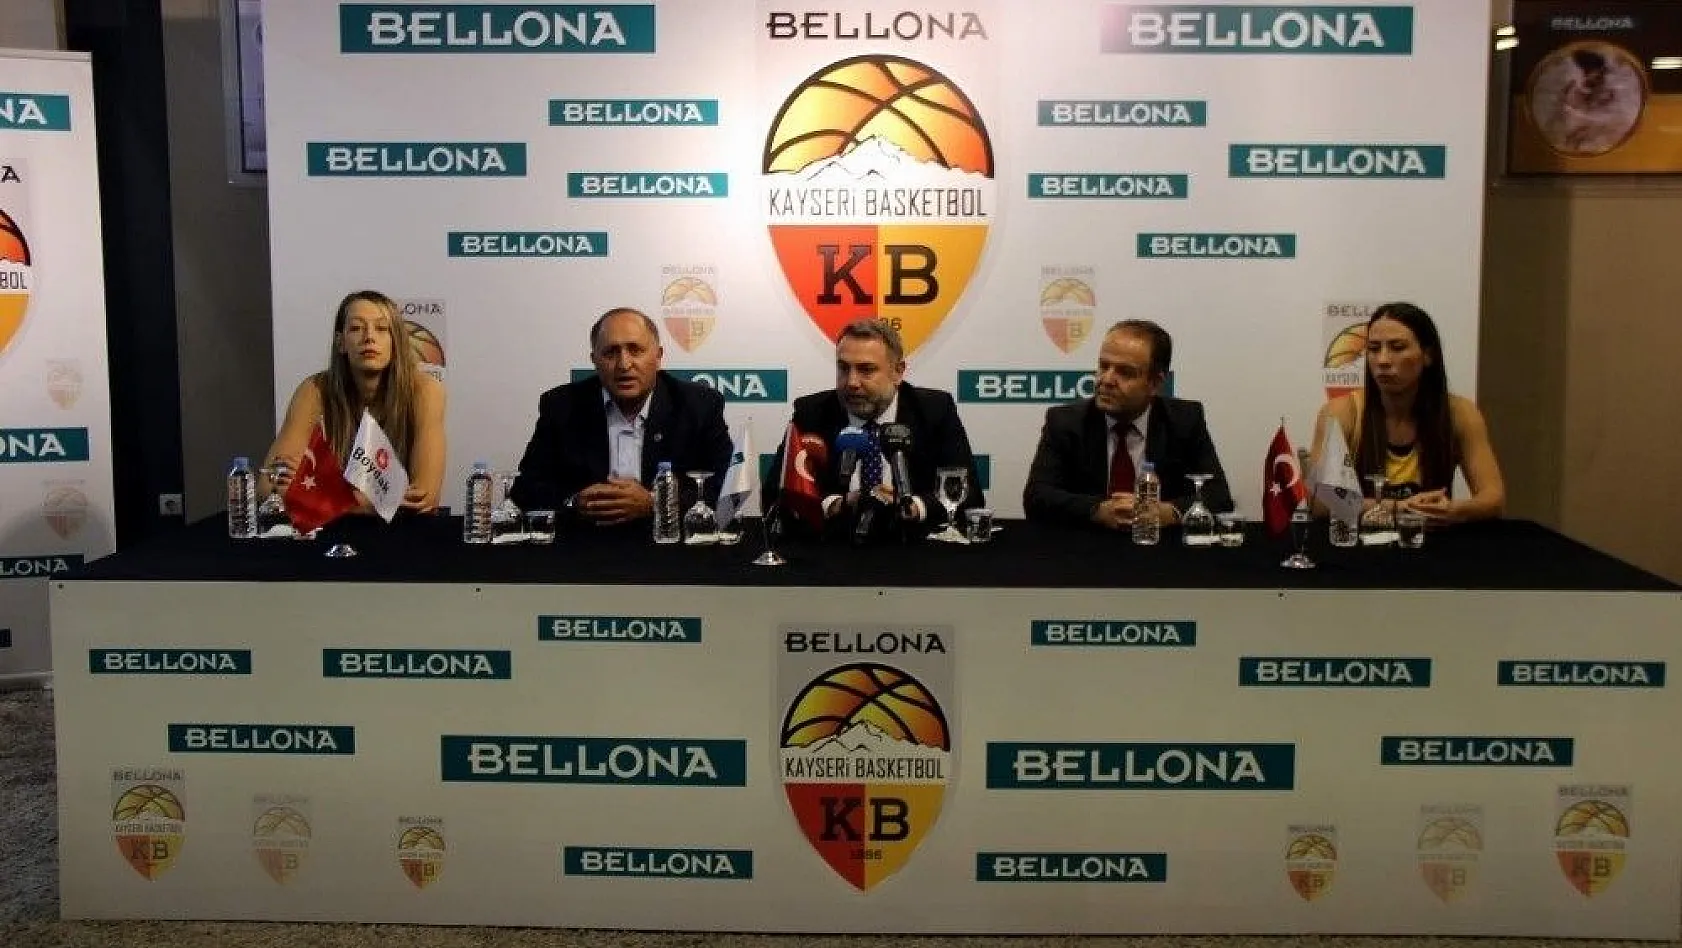 Kayseri Basketbol Kulübü Bellona ile sponsorluk imzaladı
